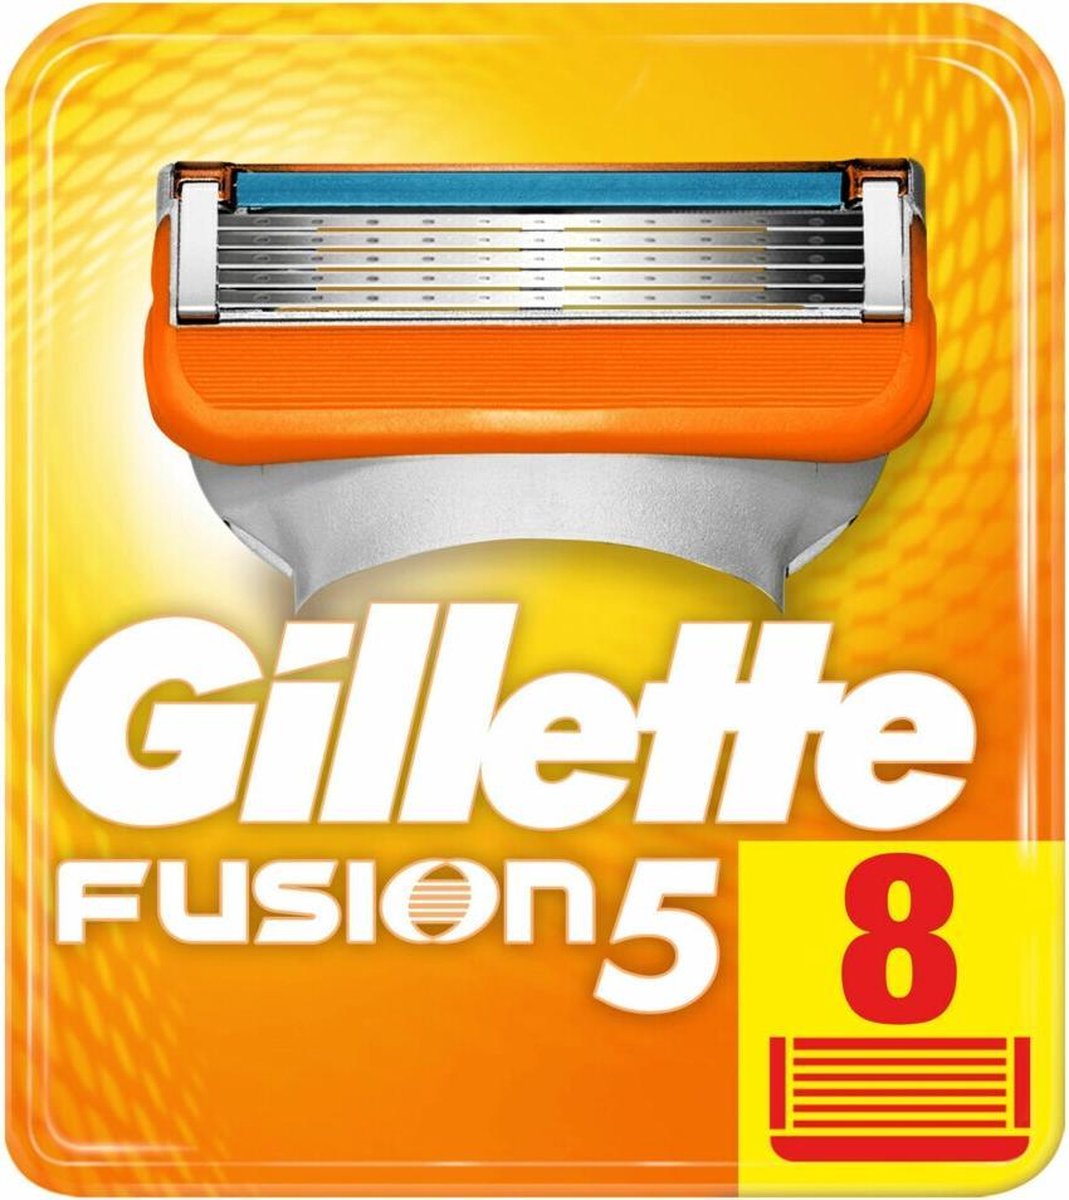 Gillette 8stuks Fusion5 Scheermesjes